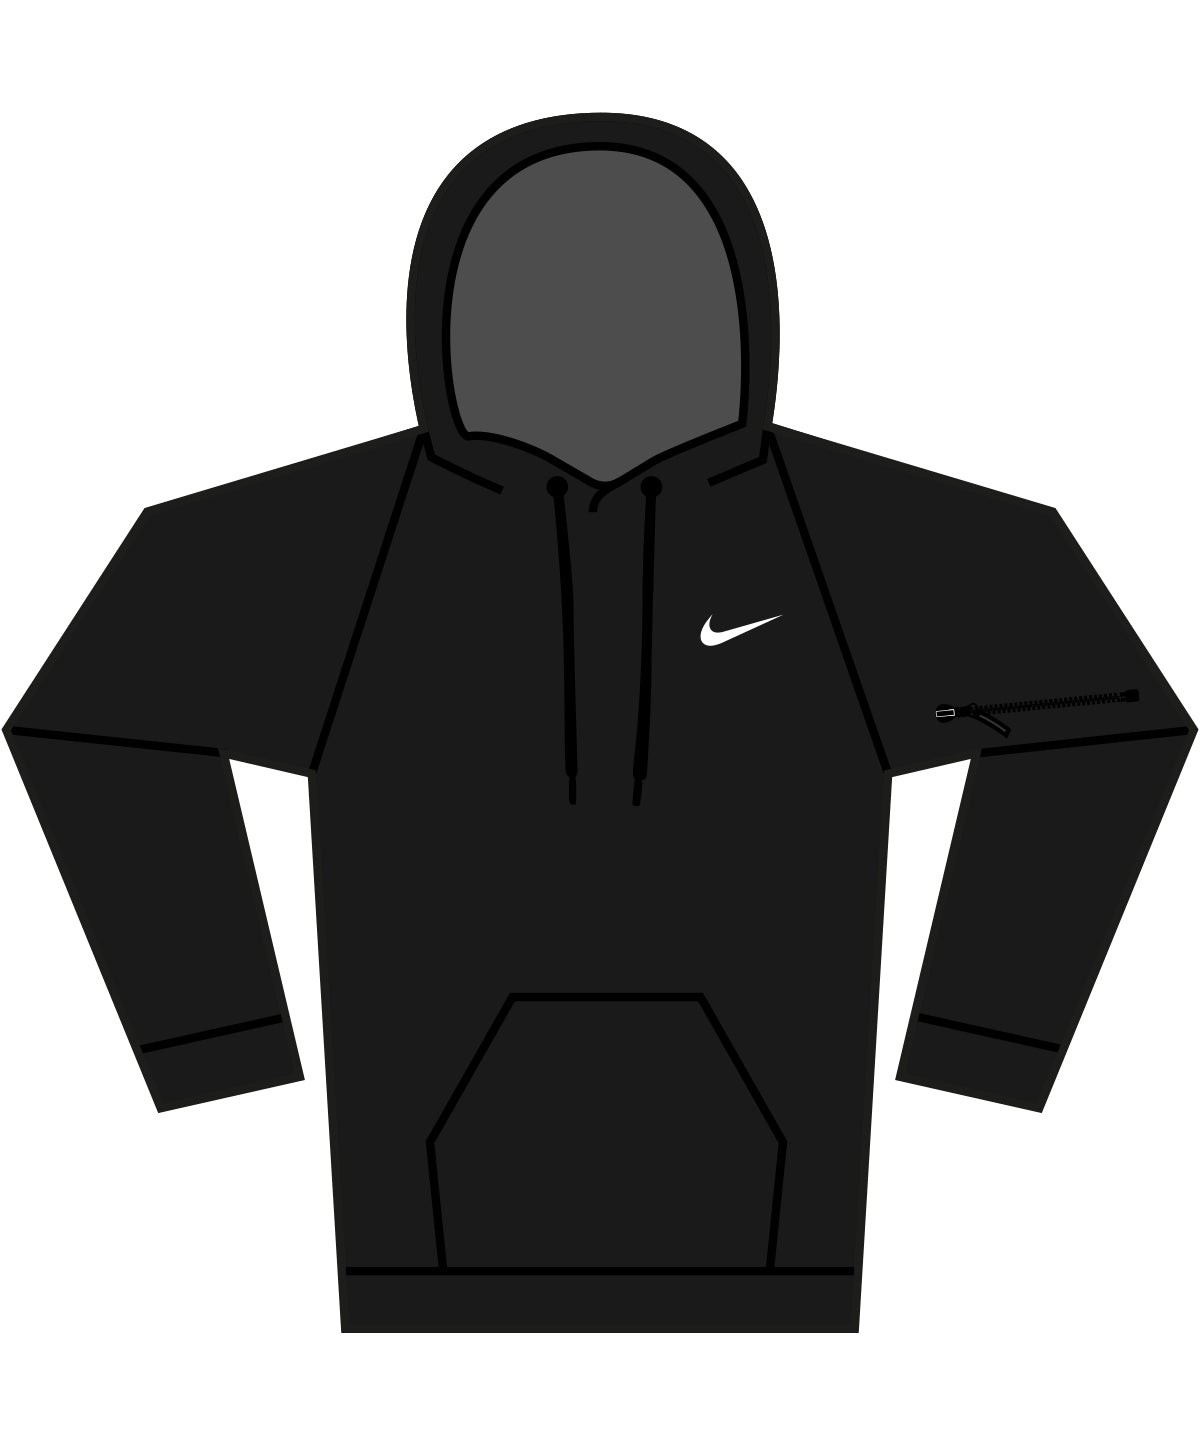 Hettupeysur - Nike Men’s Pullover Fitness Hoodie